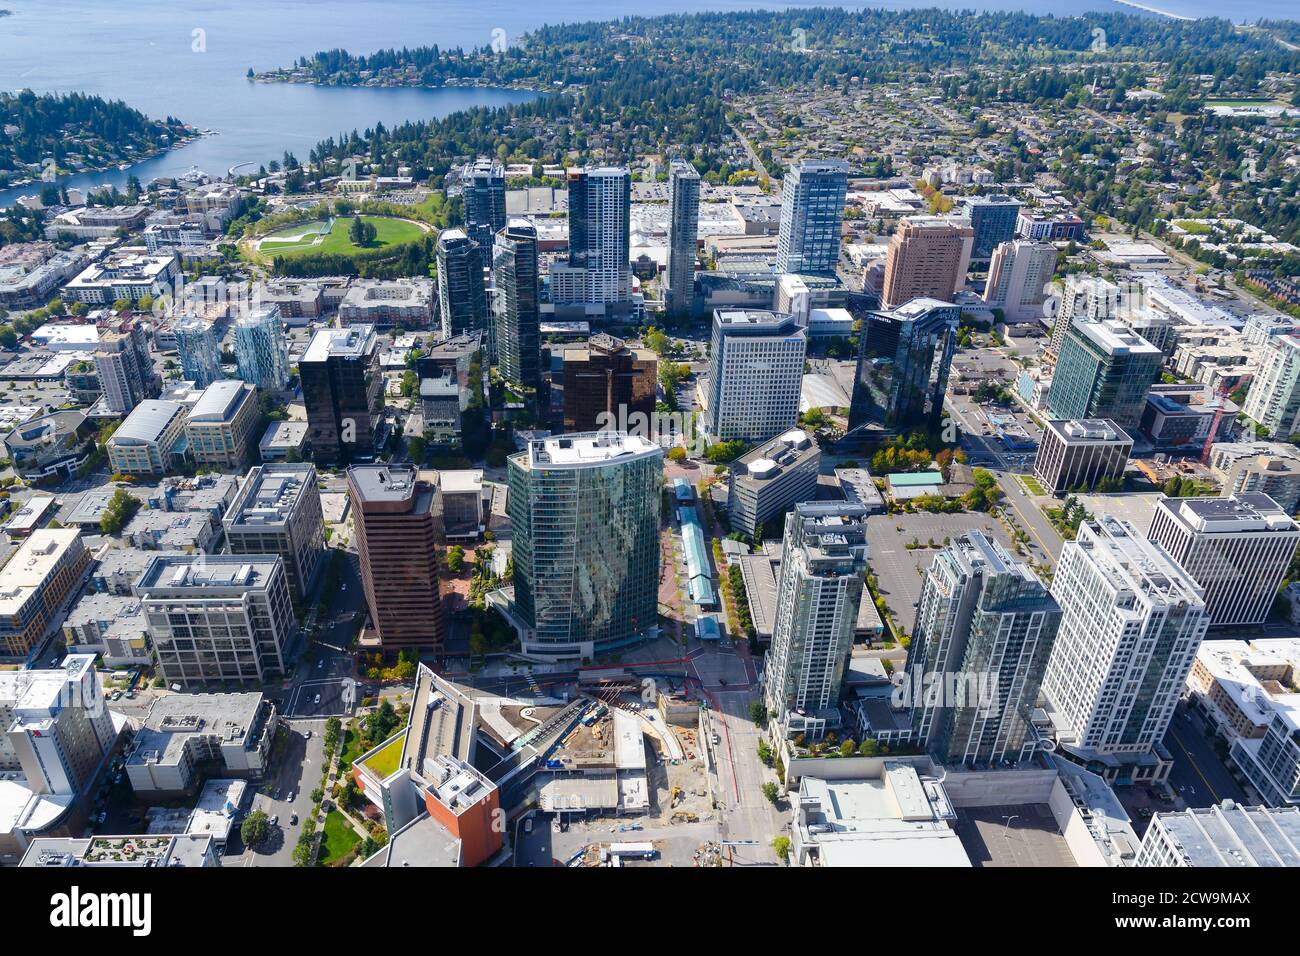 Vista aerea del centro di Bellevue nella King County, Washington state, Stati Uniti. Foto Stock